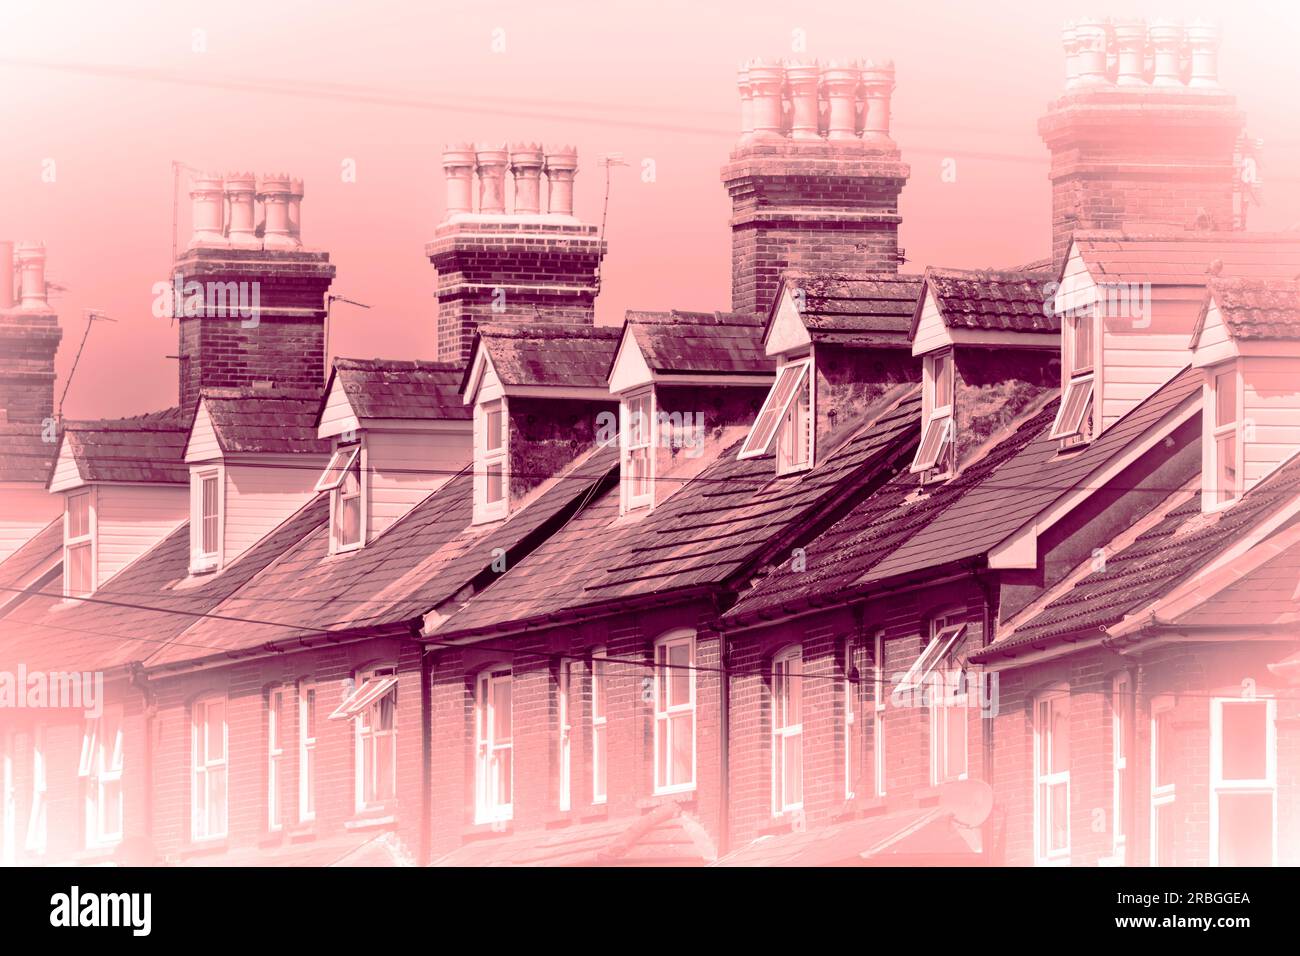 Immagine di sfondo monocromatica rossa che mostra l'alloggiamento vittoriano a schiera a Basingstoke, Regno Unito. Concetto: Mercato ipotecario, buy-to-let, tassi di interesse, affitto Foto Stock